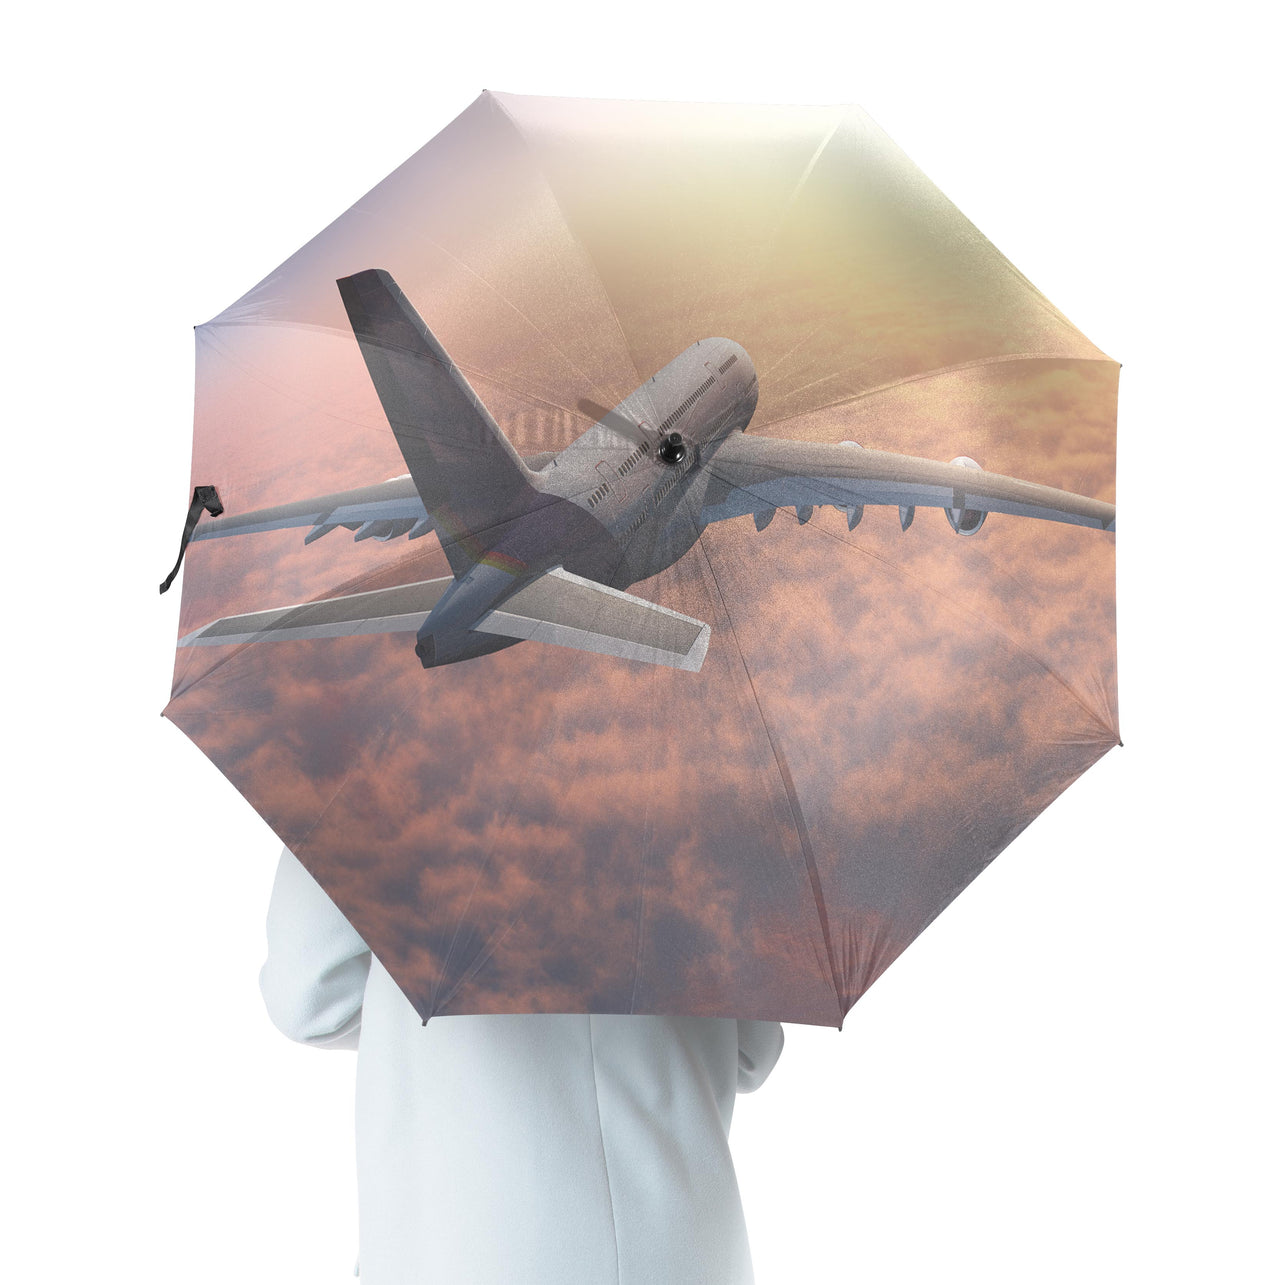 Super Cruising Airbus A380 over Clouds Designed Umbrella